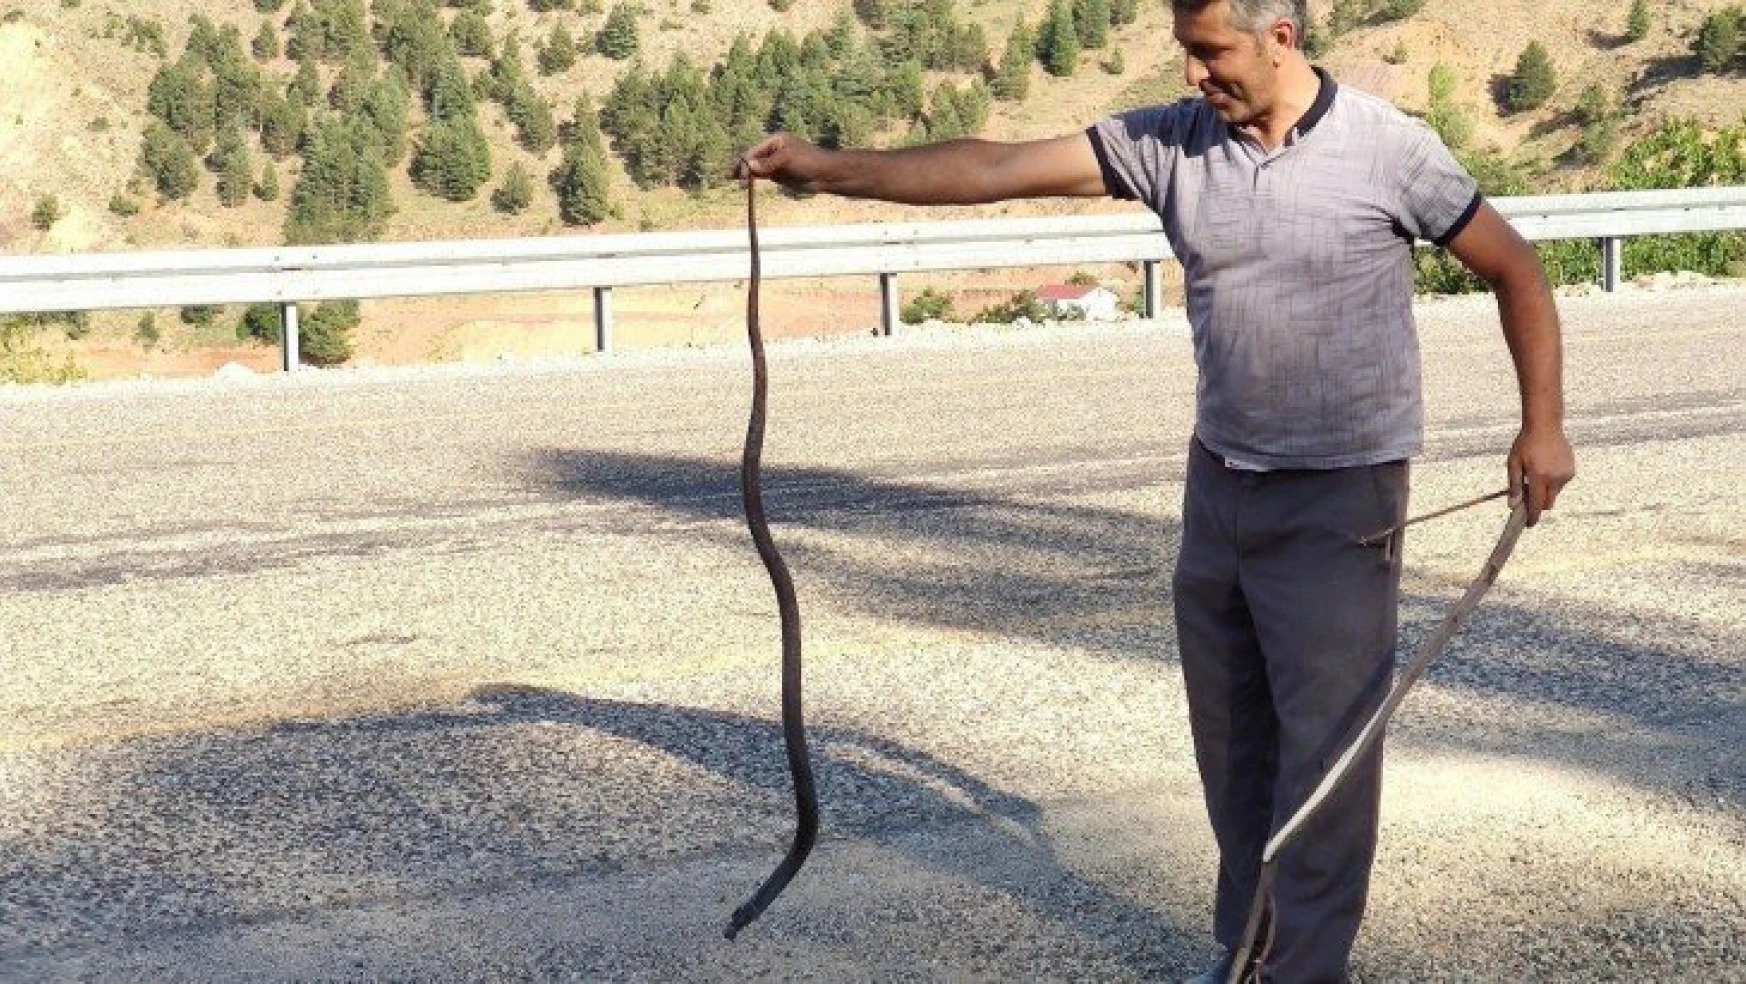 Mahsur kalan yılanı kurtararak doğaya bıraktı